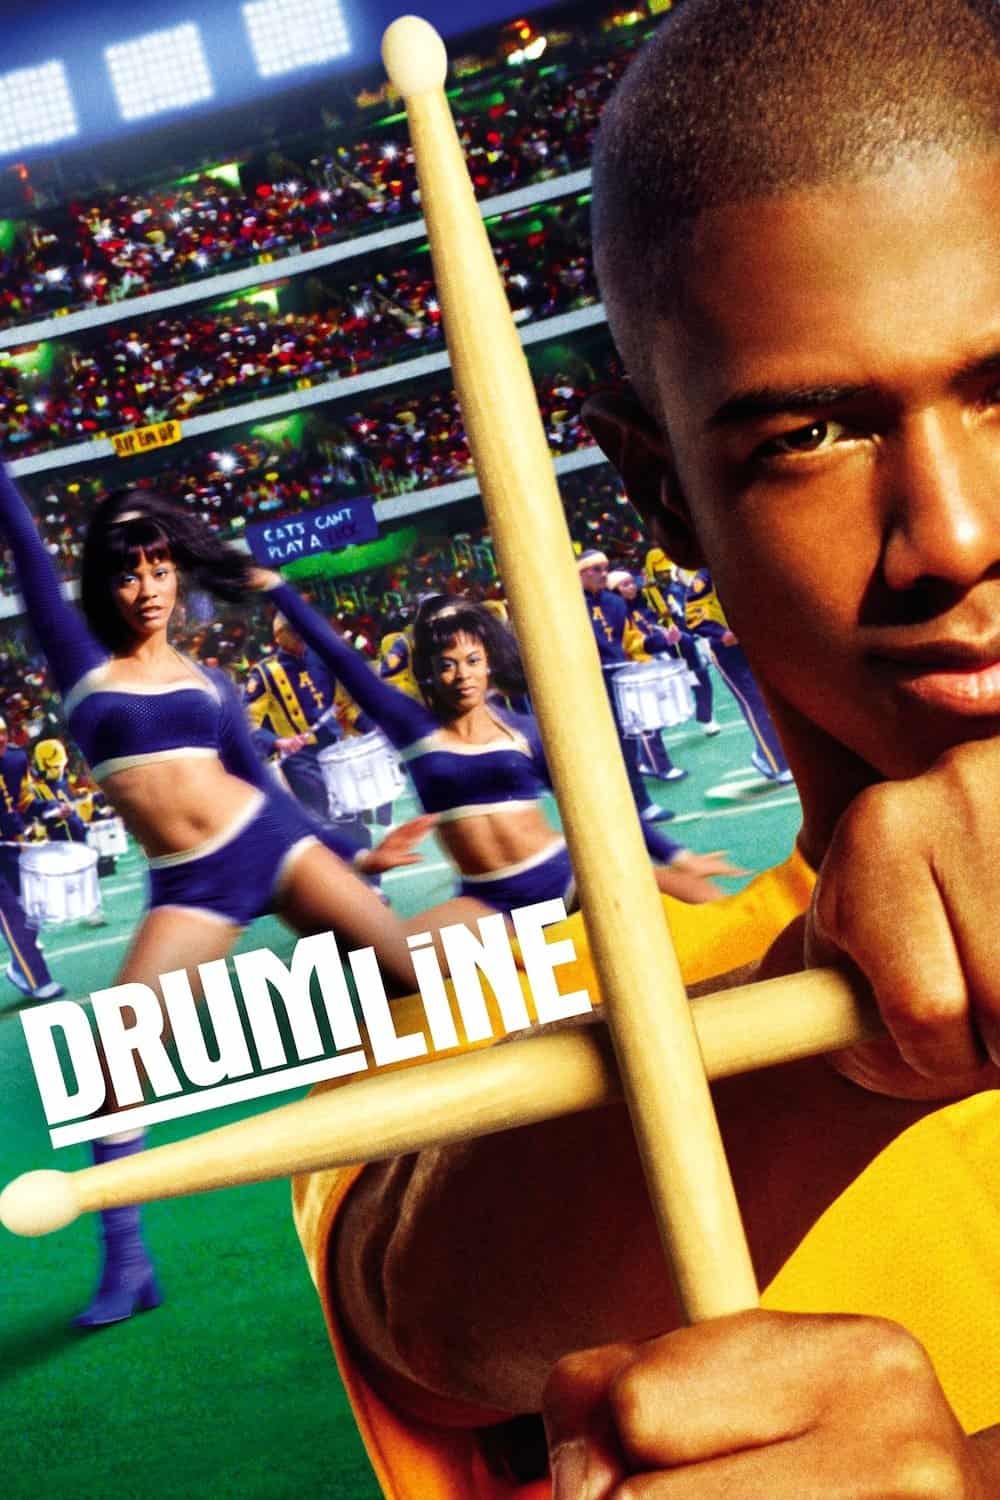 Drumline, 2002 